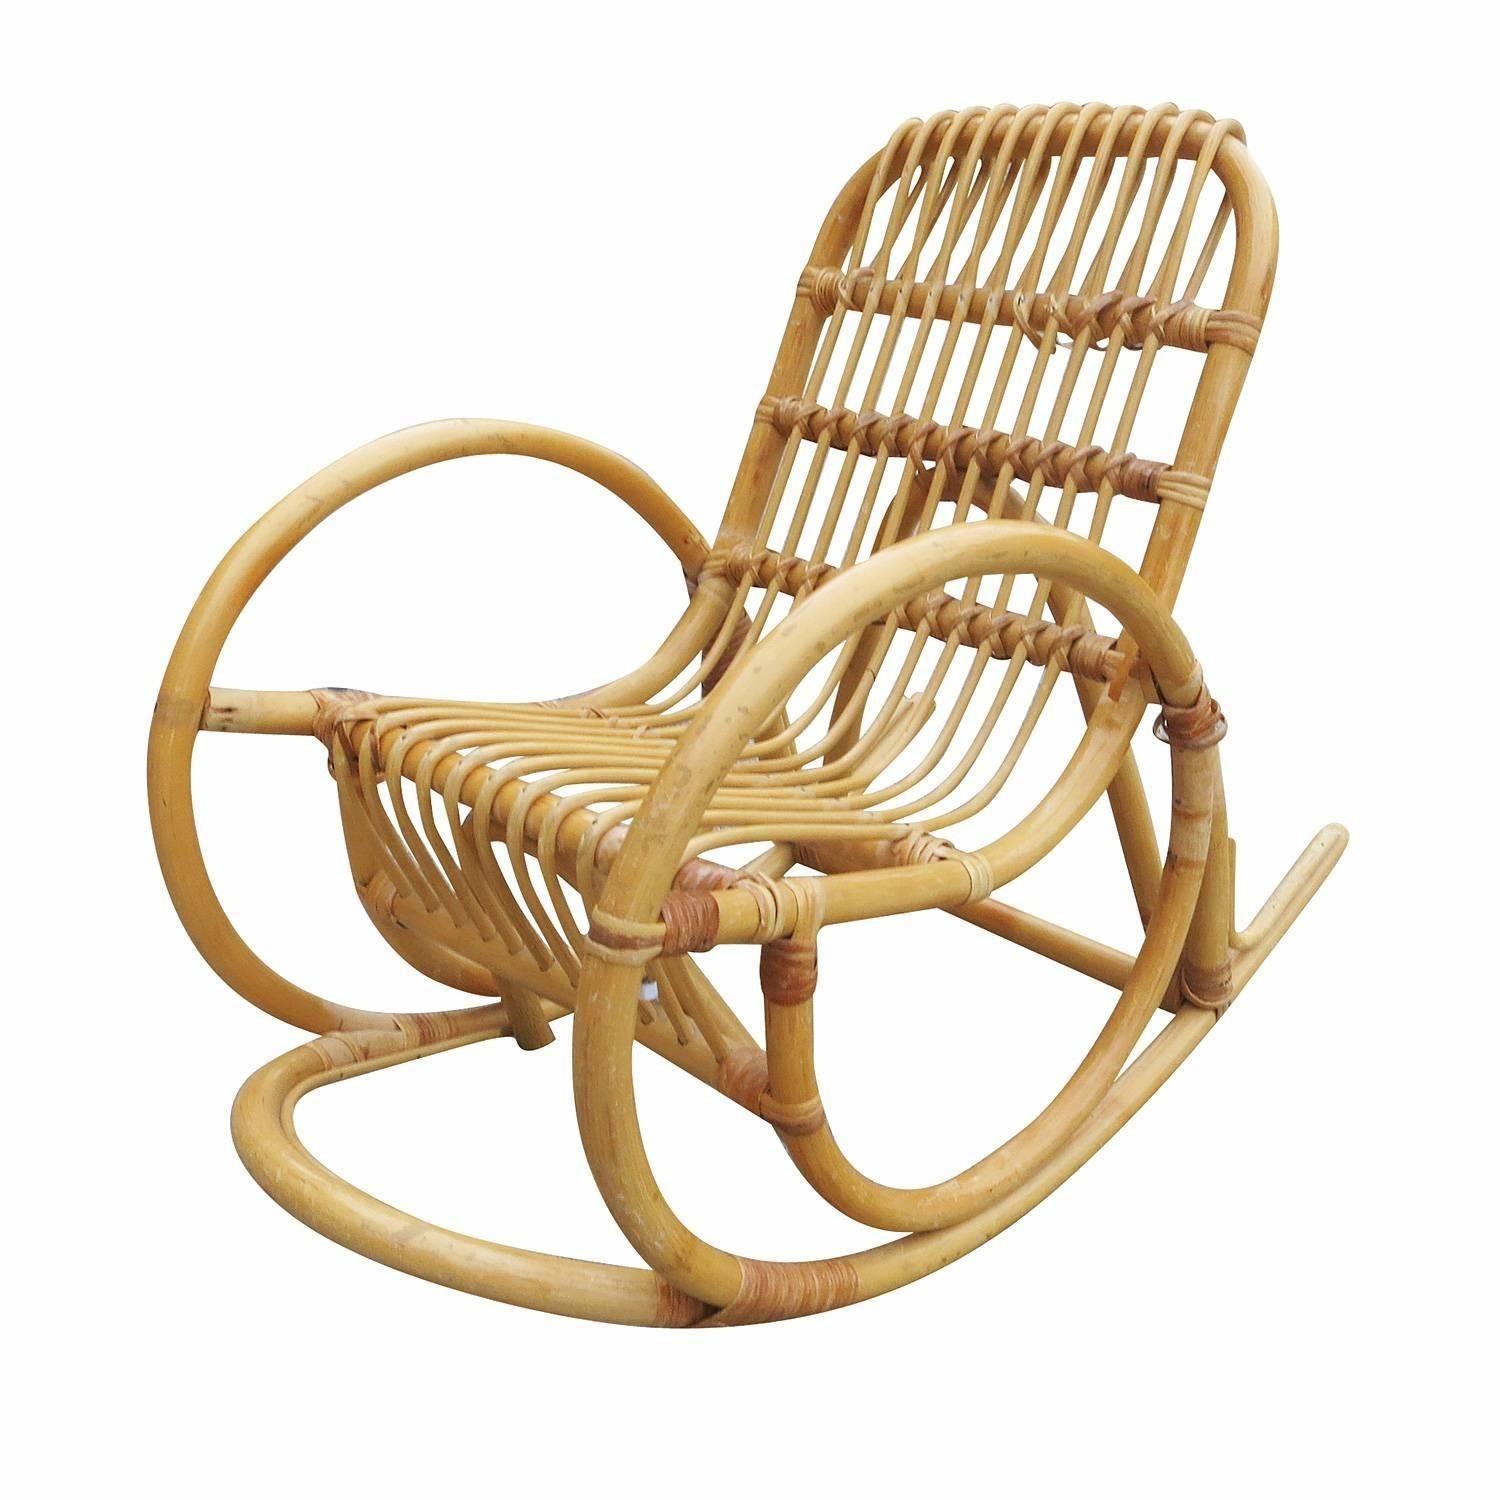 Rare fauteuil à bascule en rotin de taille enfant, inspiré par Paul Frankl, avec un bras en serpent à un brin et une assise en rotin à bâtons.


Restauré à neuf pour vous.

Tous les meubles en rotin, en bambou et en osier ont été soigneusement remis